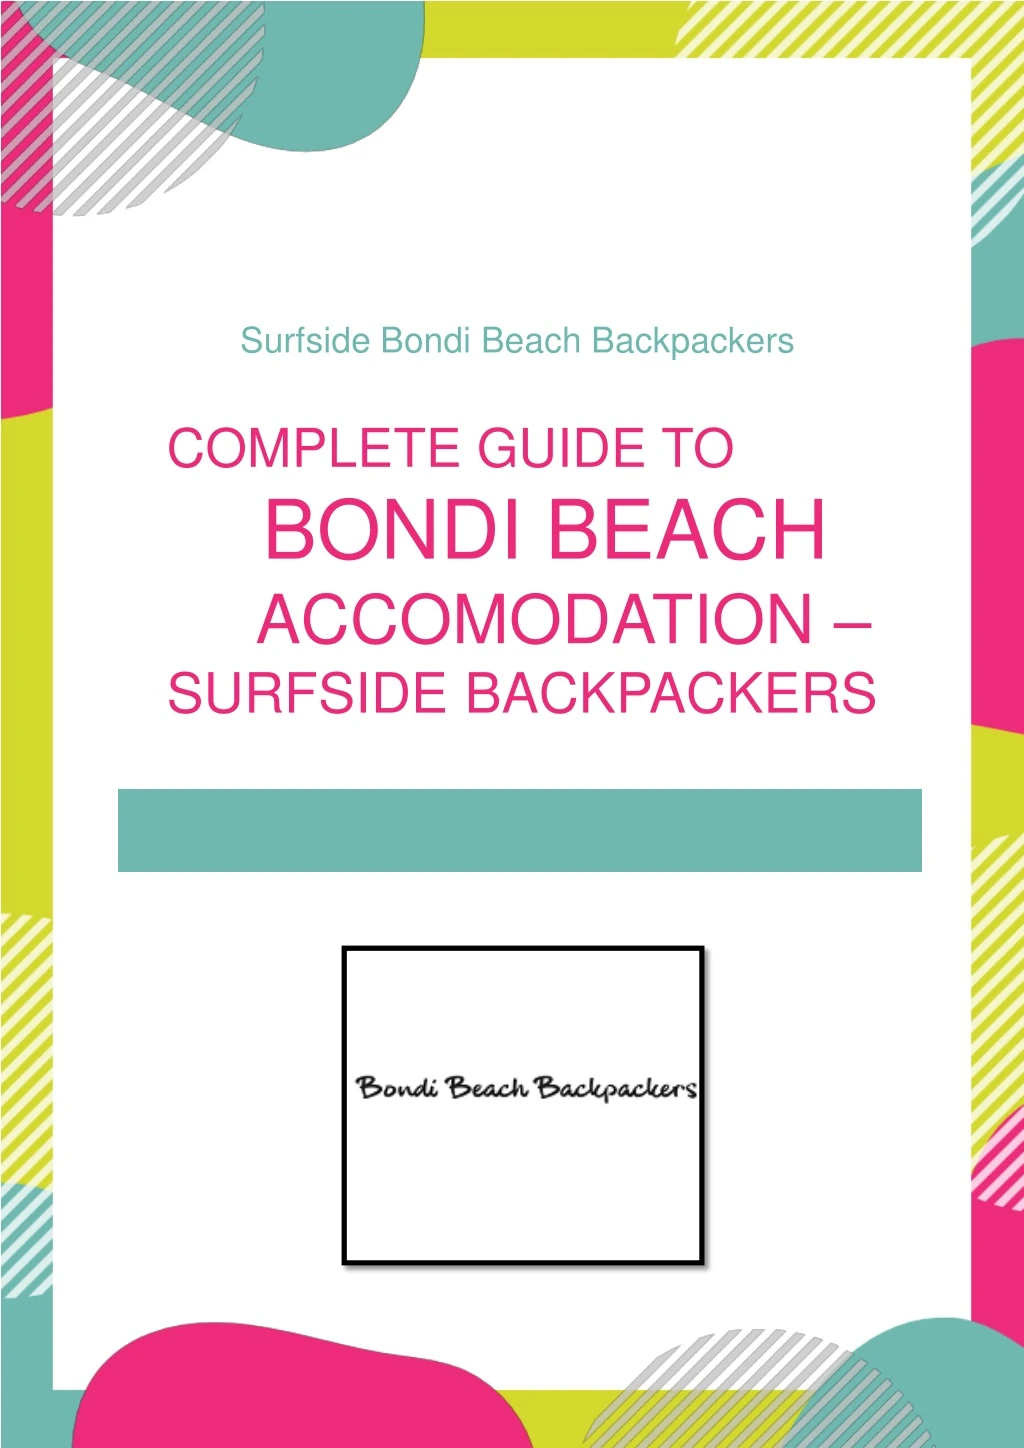 surfside bondi beach backpackers